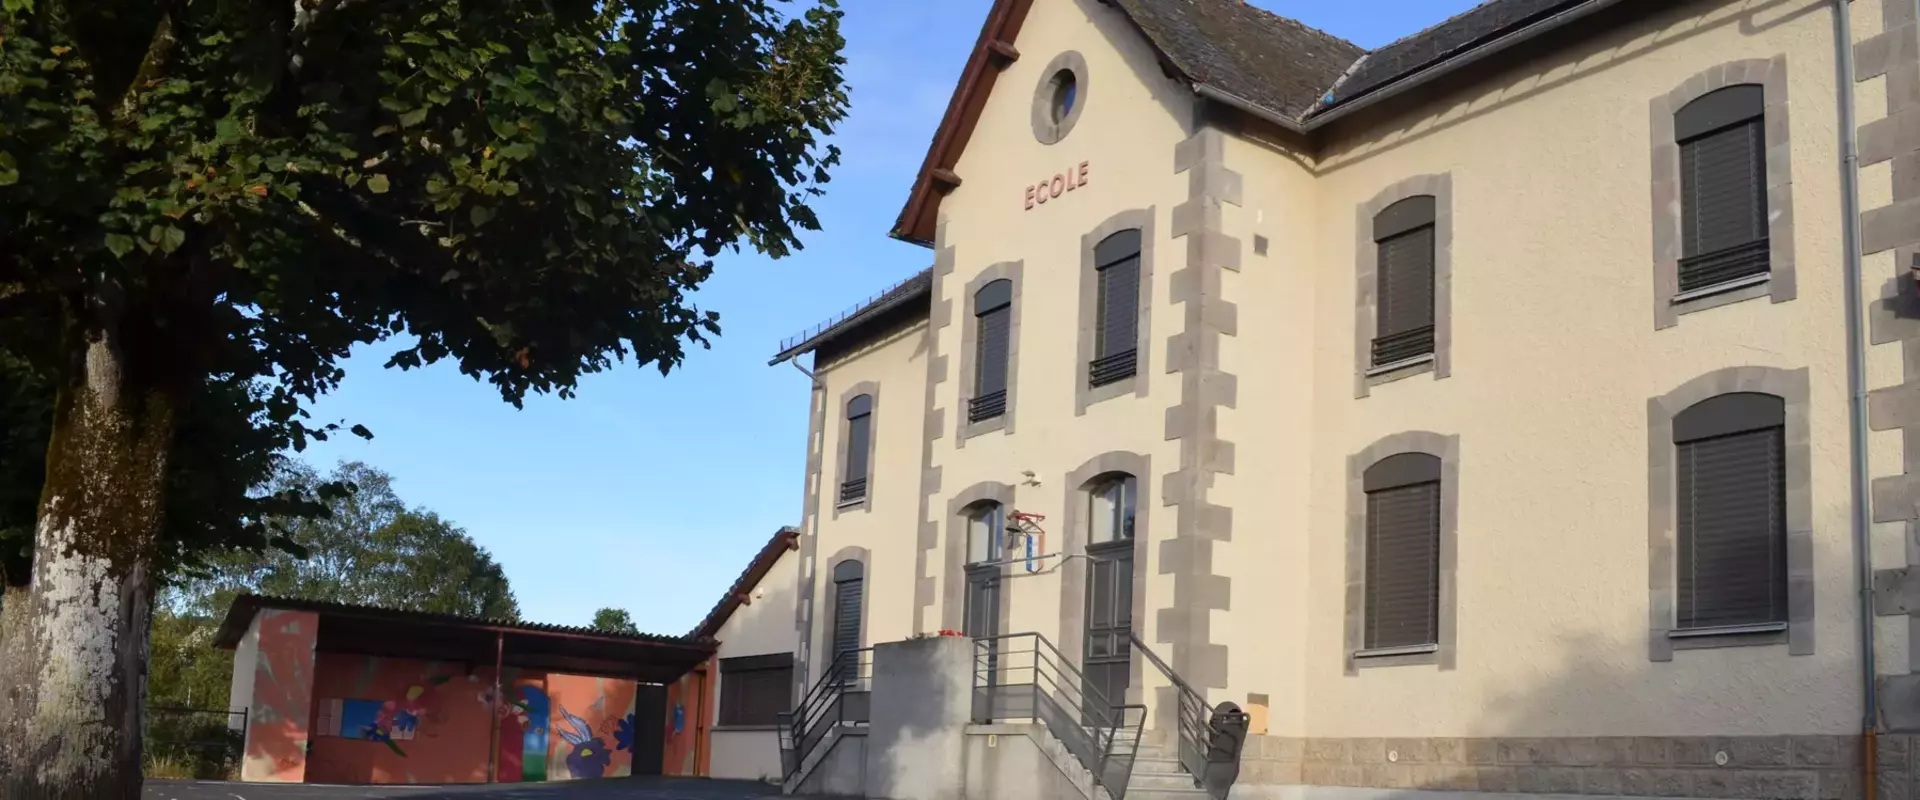 L'école de Prunet dans le Cantal